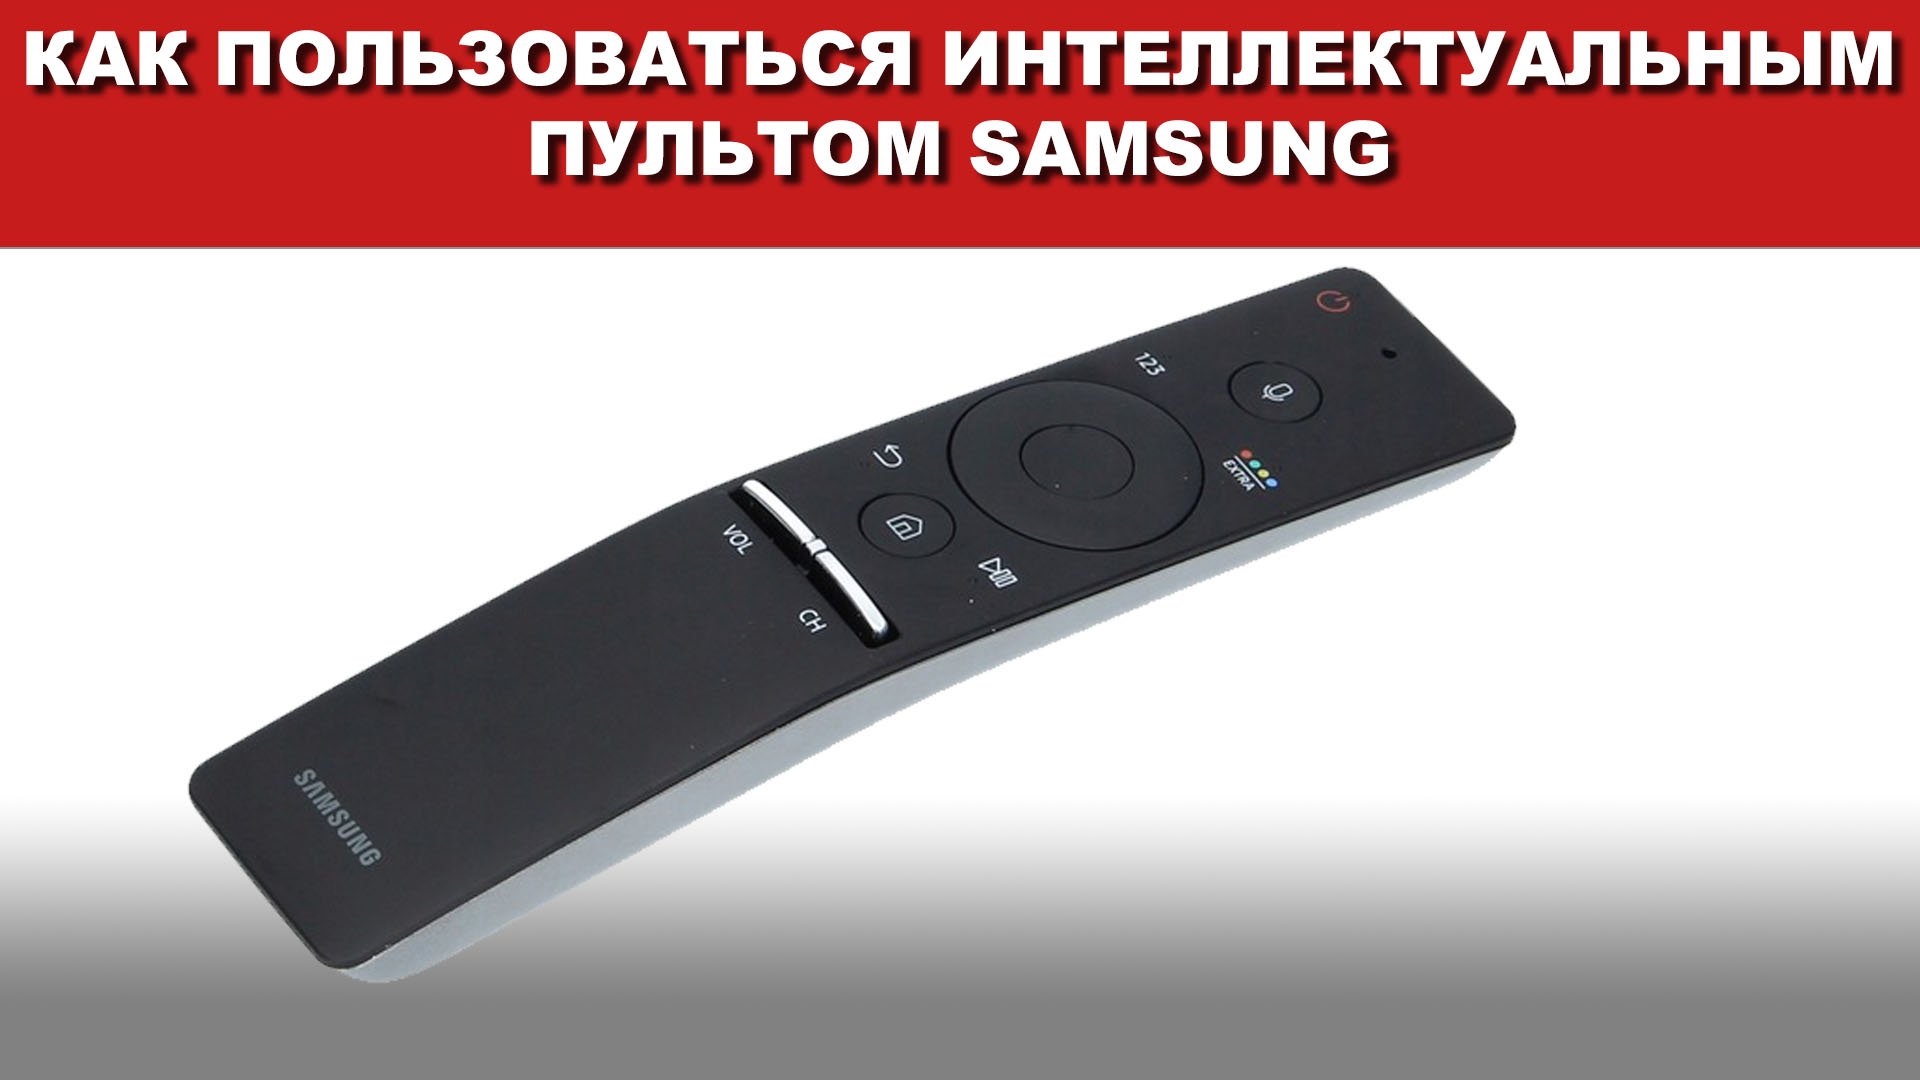 Пульт Samsung bn59-01220d. Пульт Samsung Smart Touch Control. Телевизор самсунг пульт управления интеллектуальный.